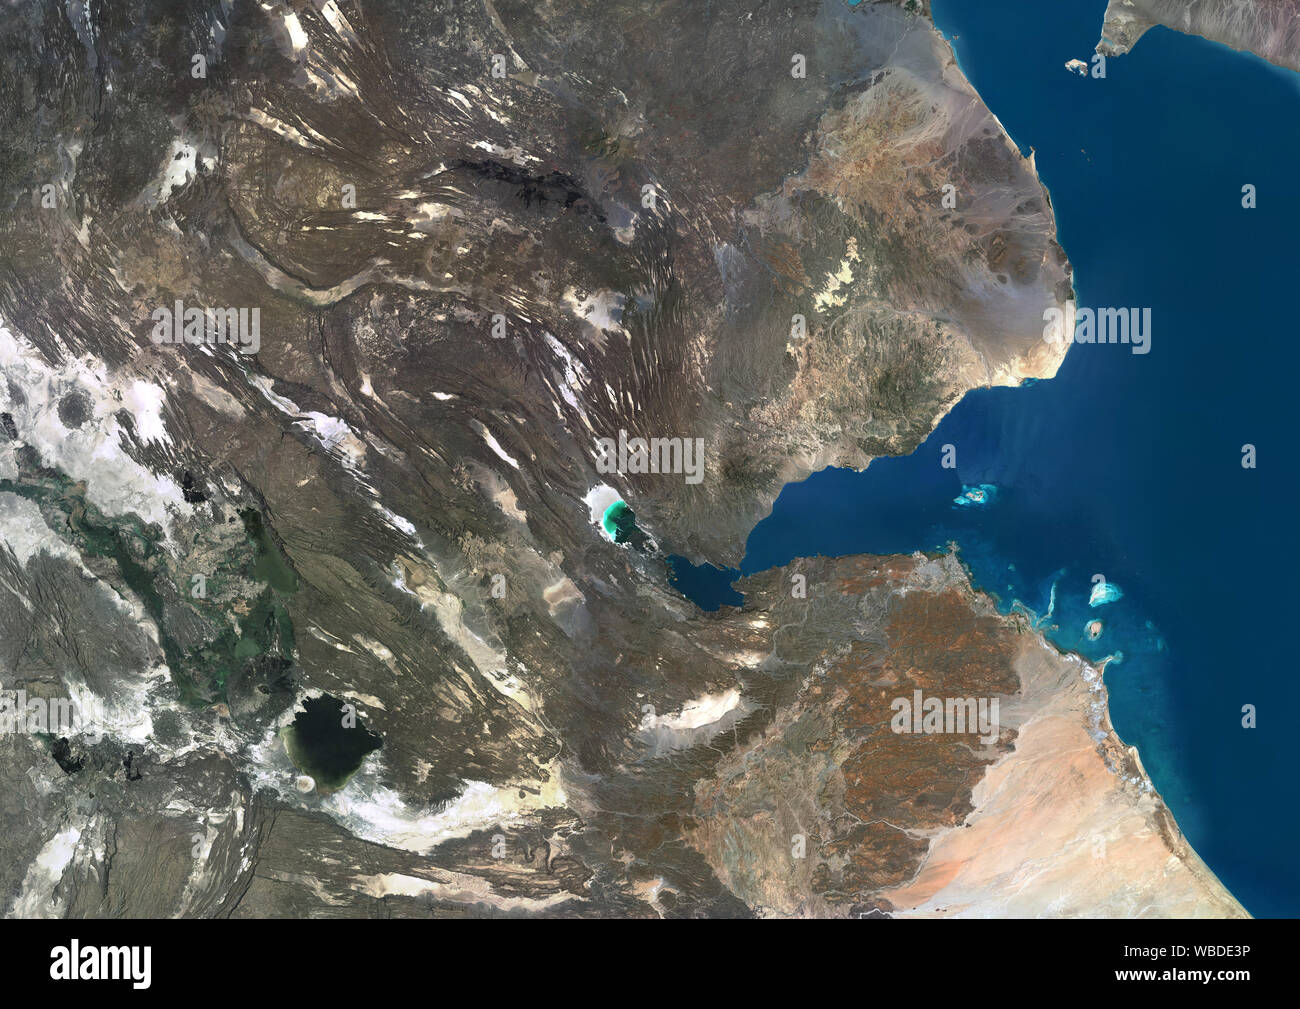 Farbe Satellitenbild von Dschibuti, einem Land im Horn von Afrika. Dieses Bild wurde aus Daten von Sentinel-2 & Landsat 8 Satelliten erfassten zusammengestellt. Stockfoto